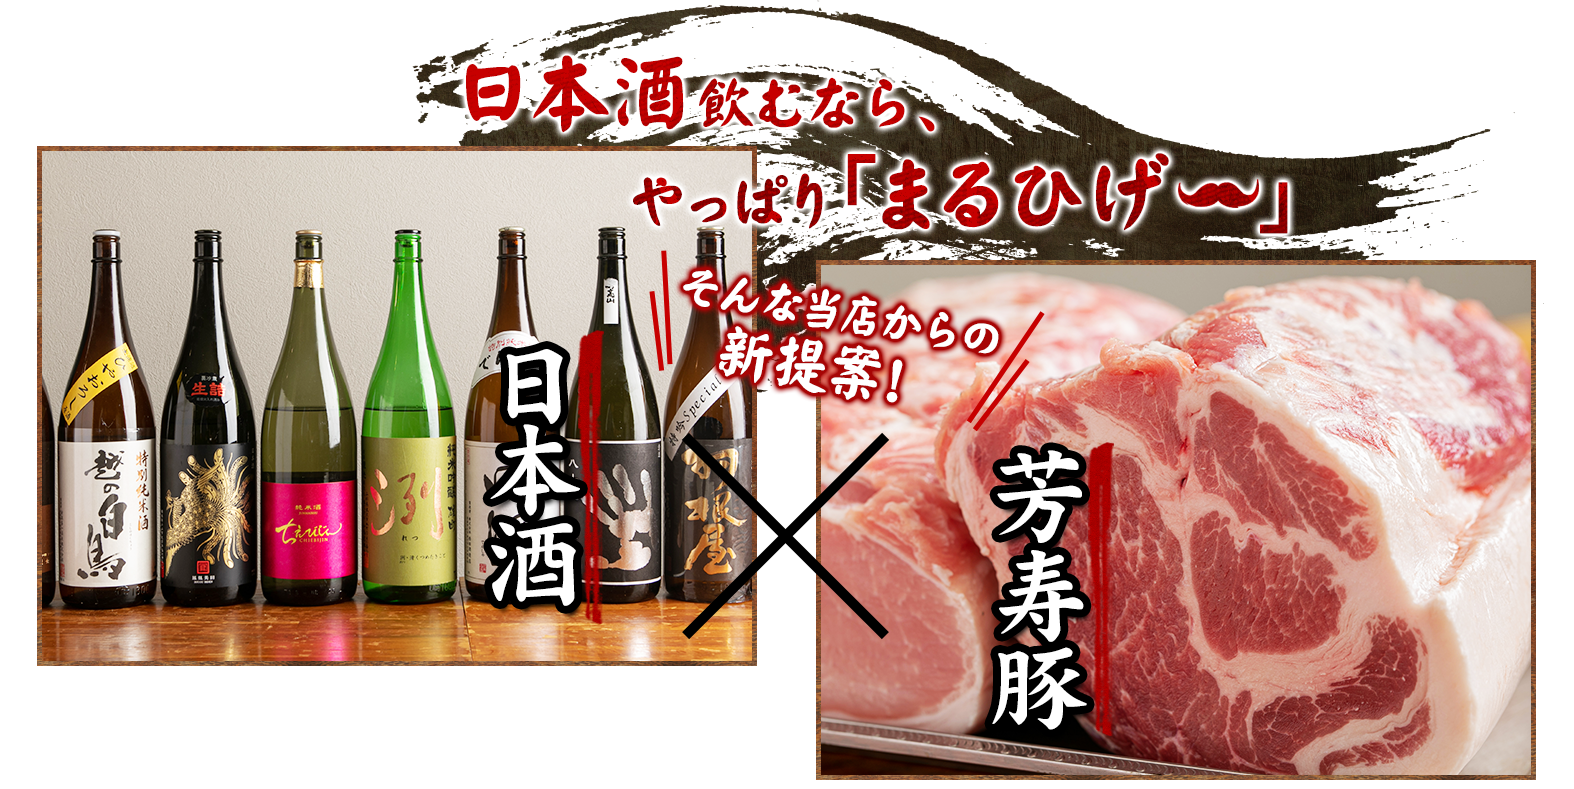 日本酒飲むなら、やっぱり「まるひげ」 そんな当店からの新提案！日本酒×芳寿豚